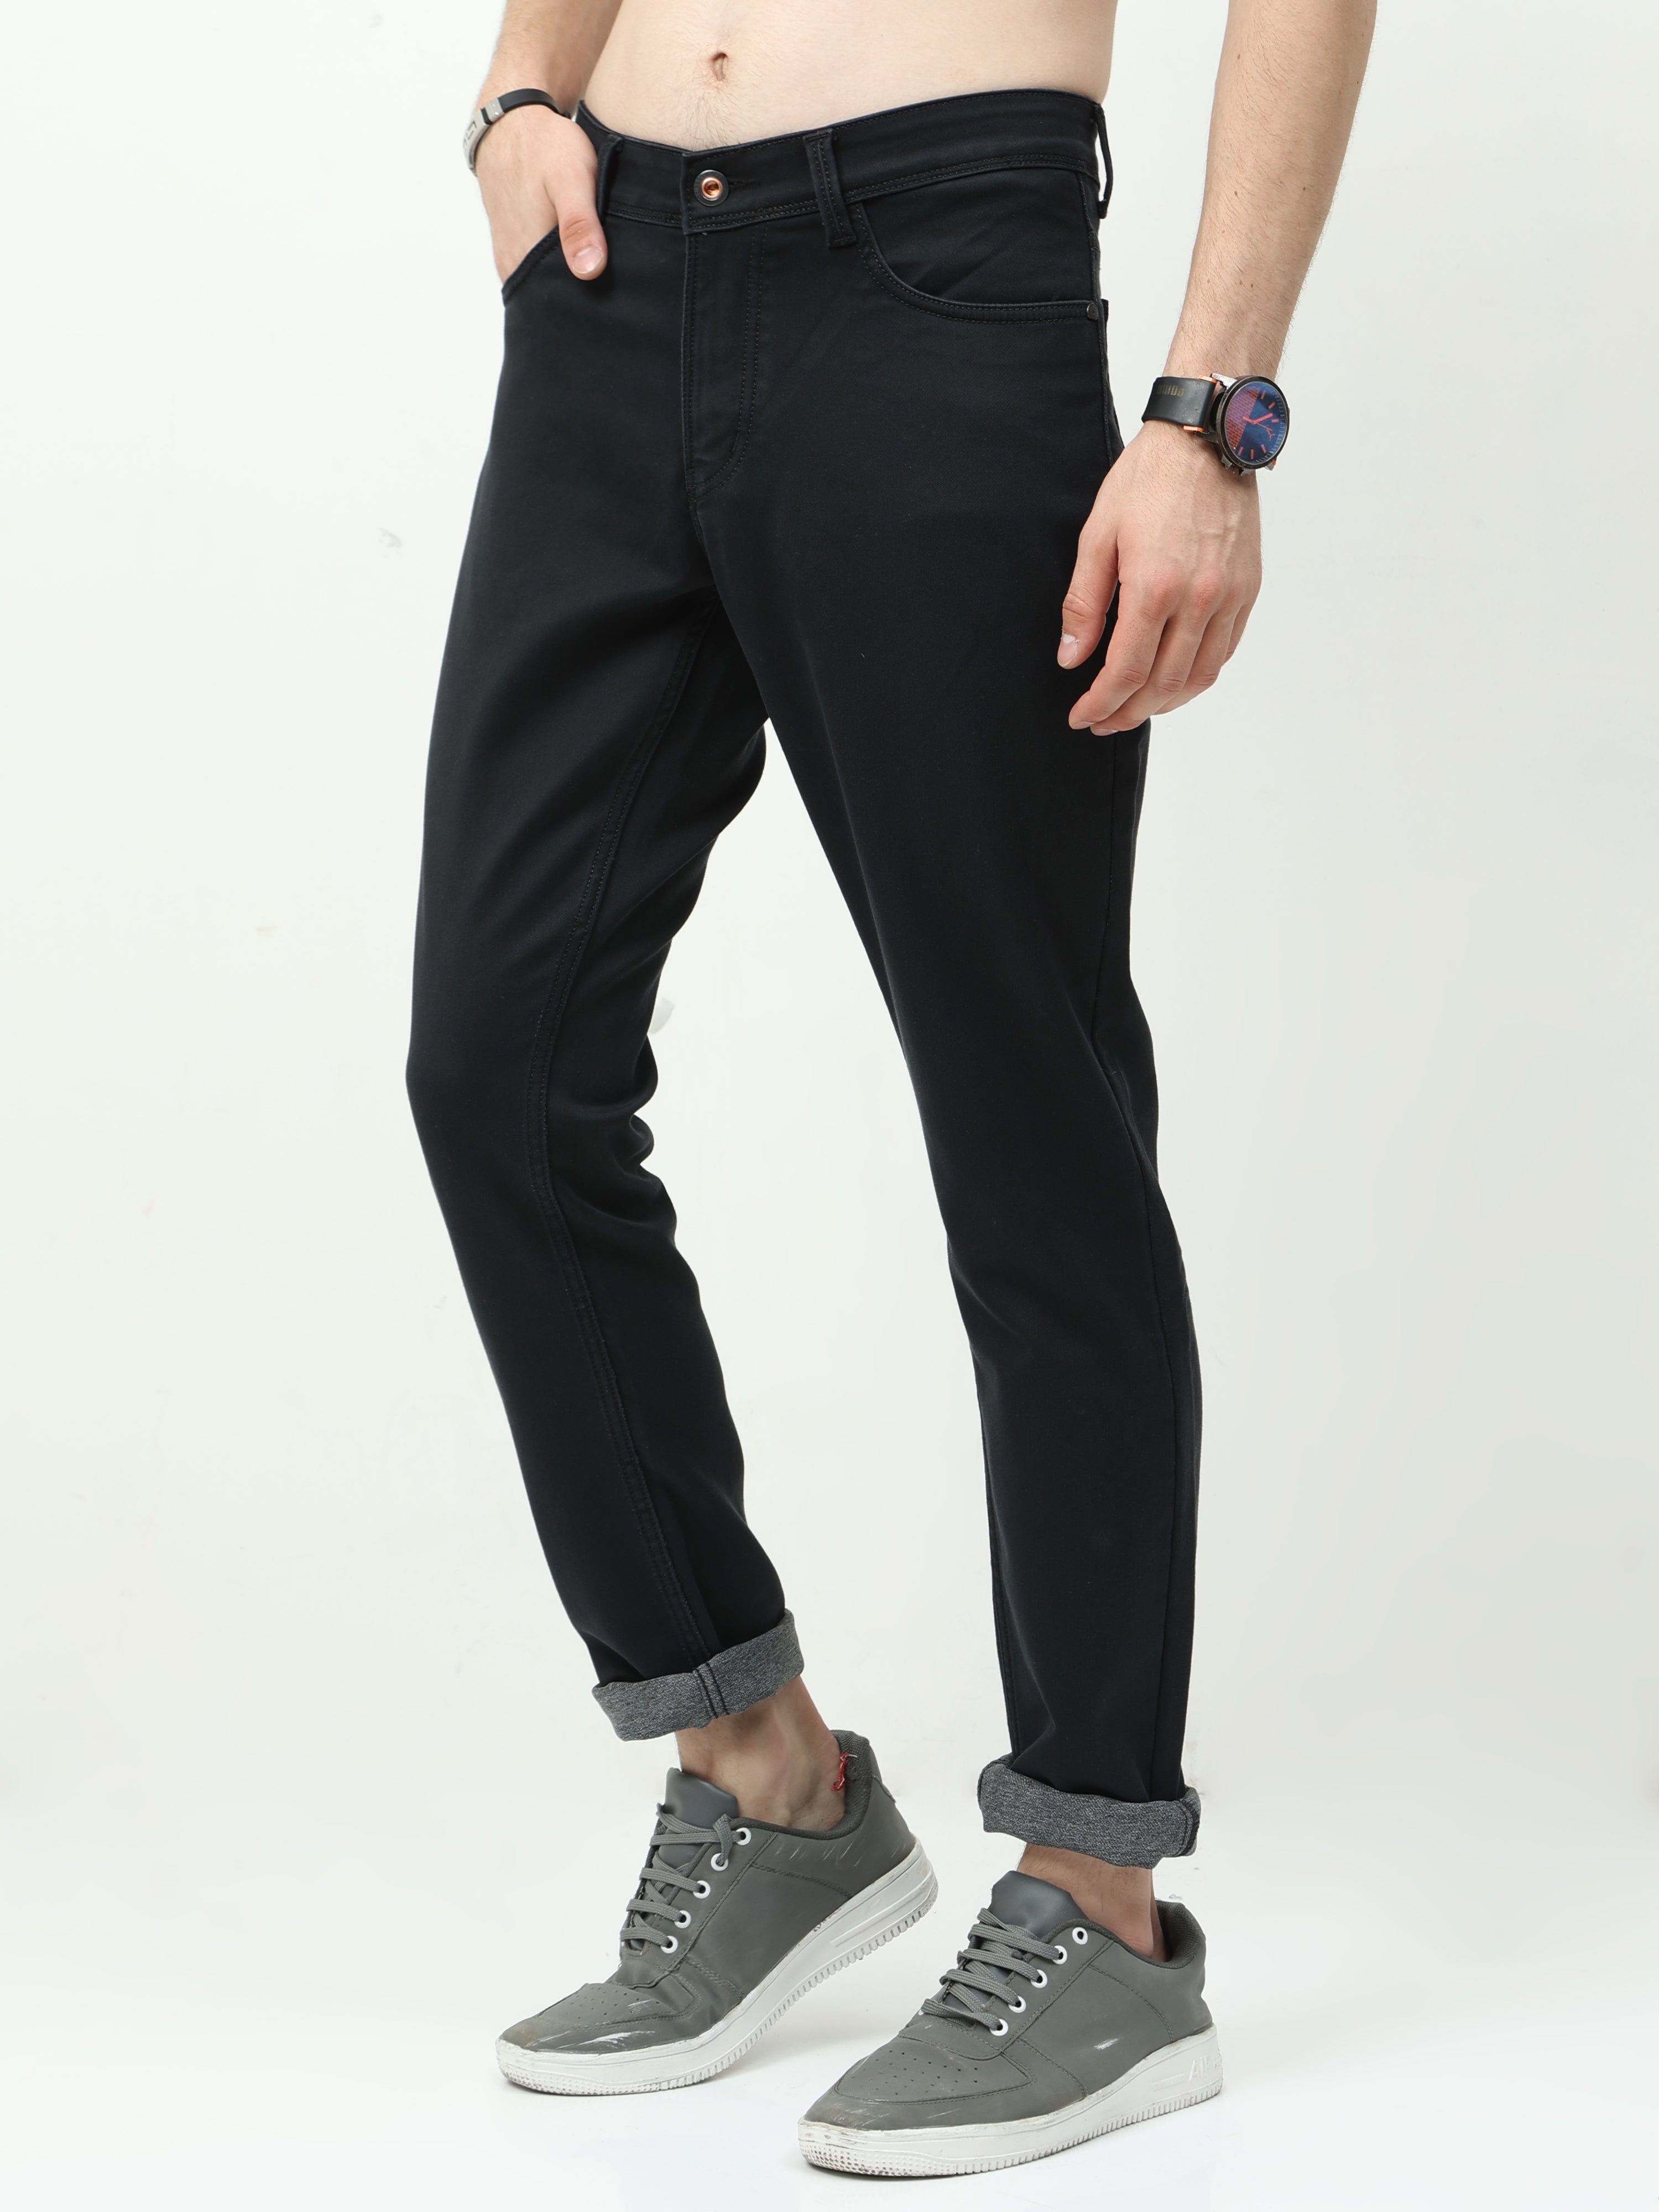 SleekFit Men's Slim Black Jeans